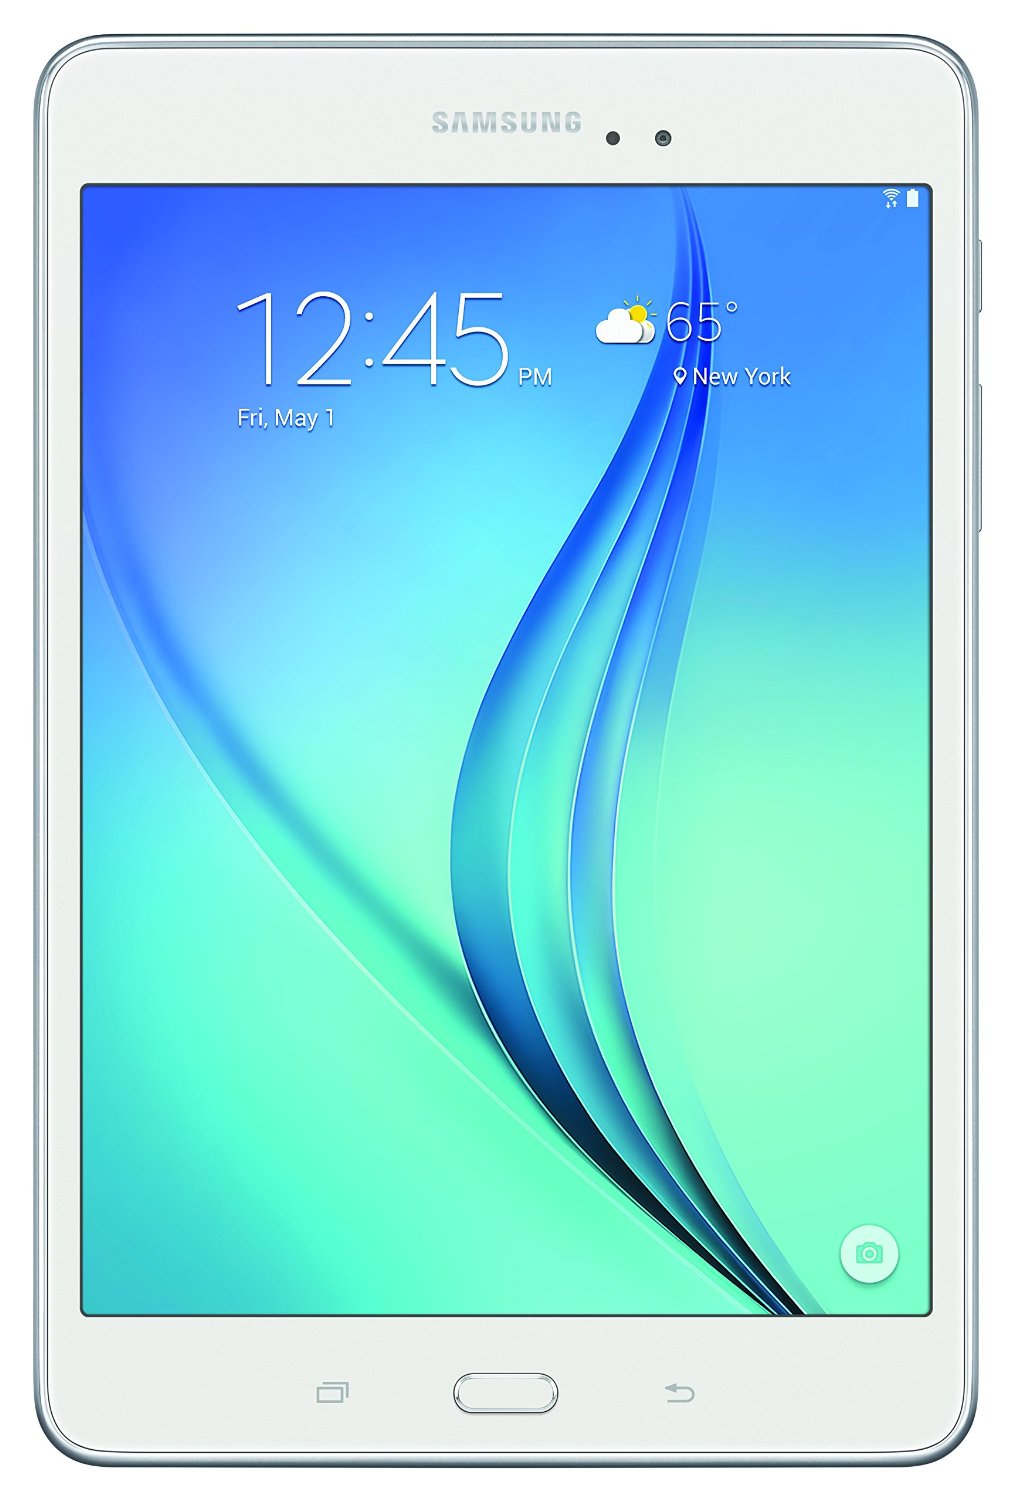 Download Samsung GALAXY Tab 10.1 GT-P7500D …